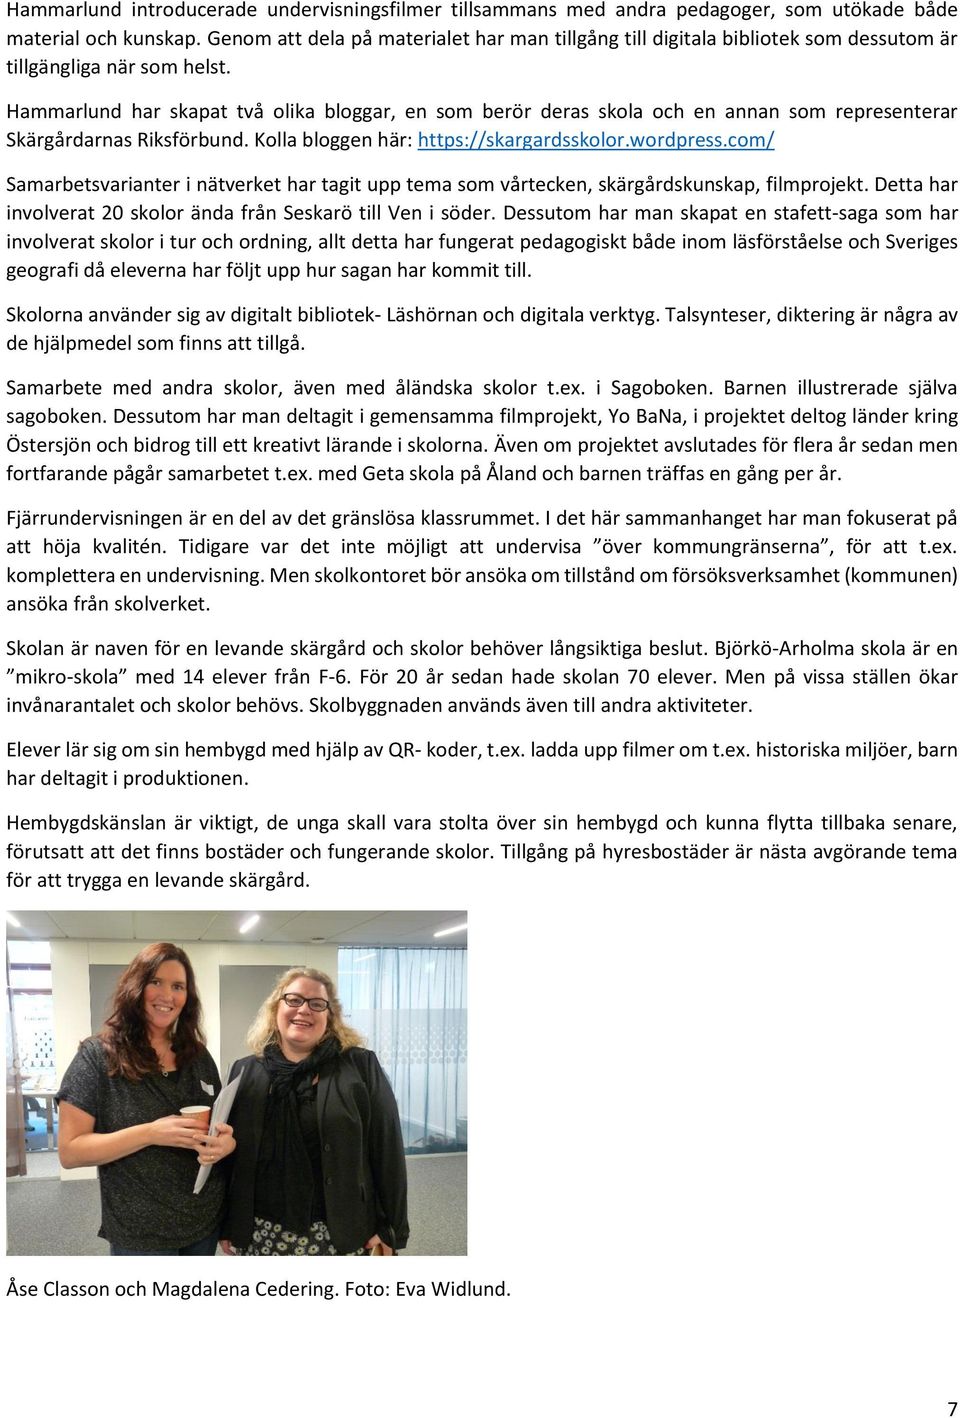 Hammarlund har skapat två olika bloggar, en som berör deras skola och en annan som representerar Skärgårdarnas Riksförbund. Kolla bloggen här: https://skargardsskolor.wordpress.